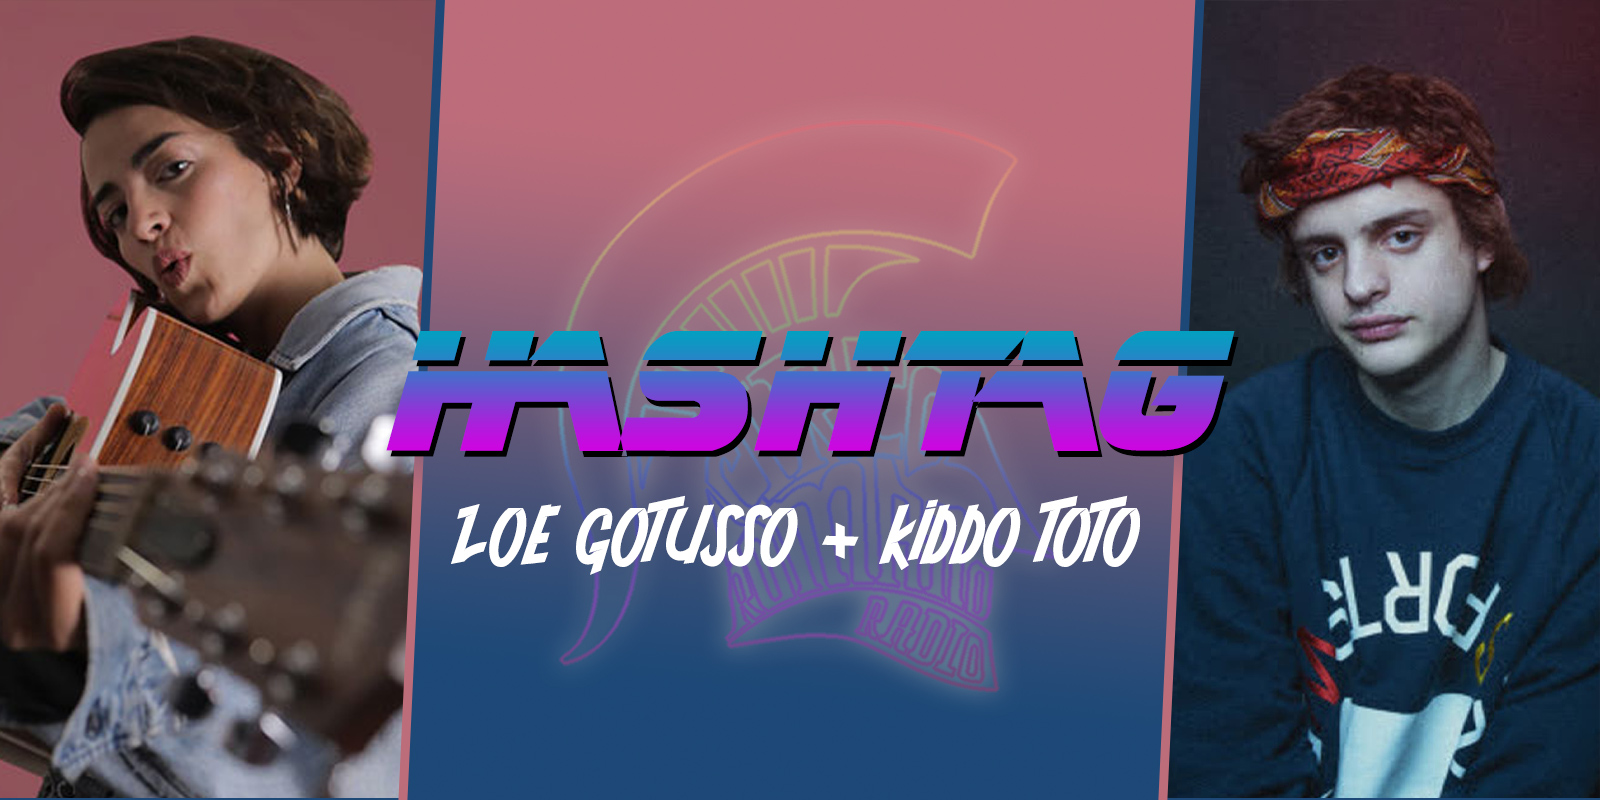 #HASHTAG Ep. 13: Zoe Gottuso + Kiddo Toto